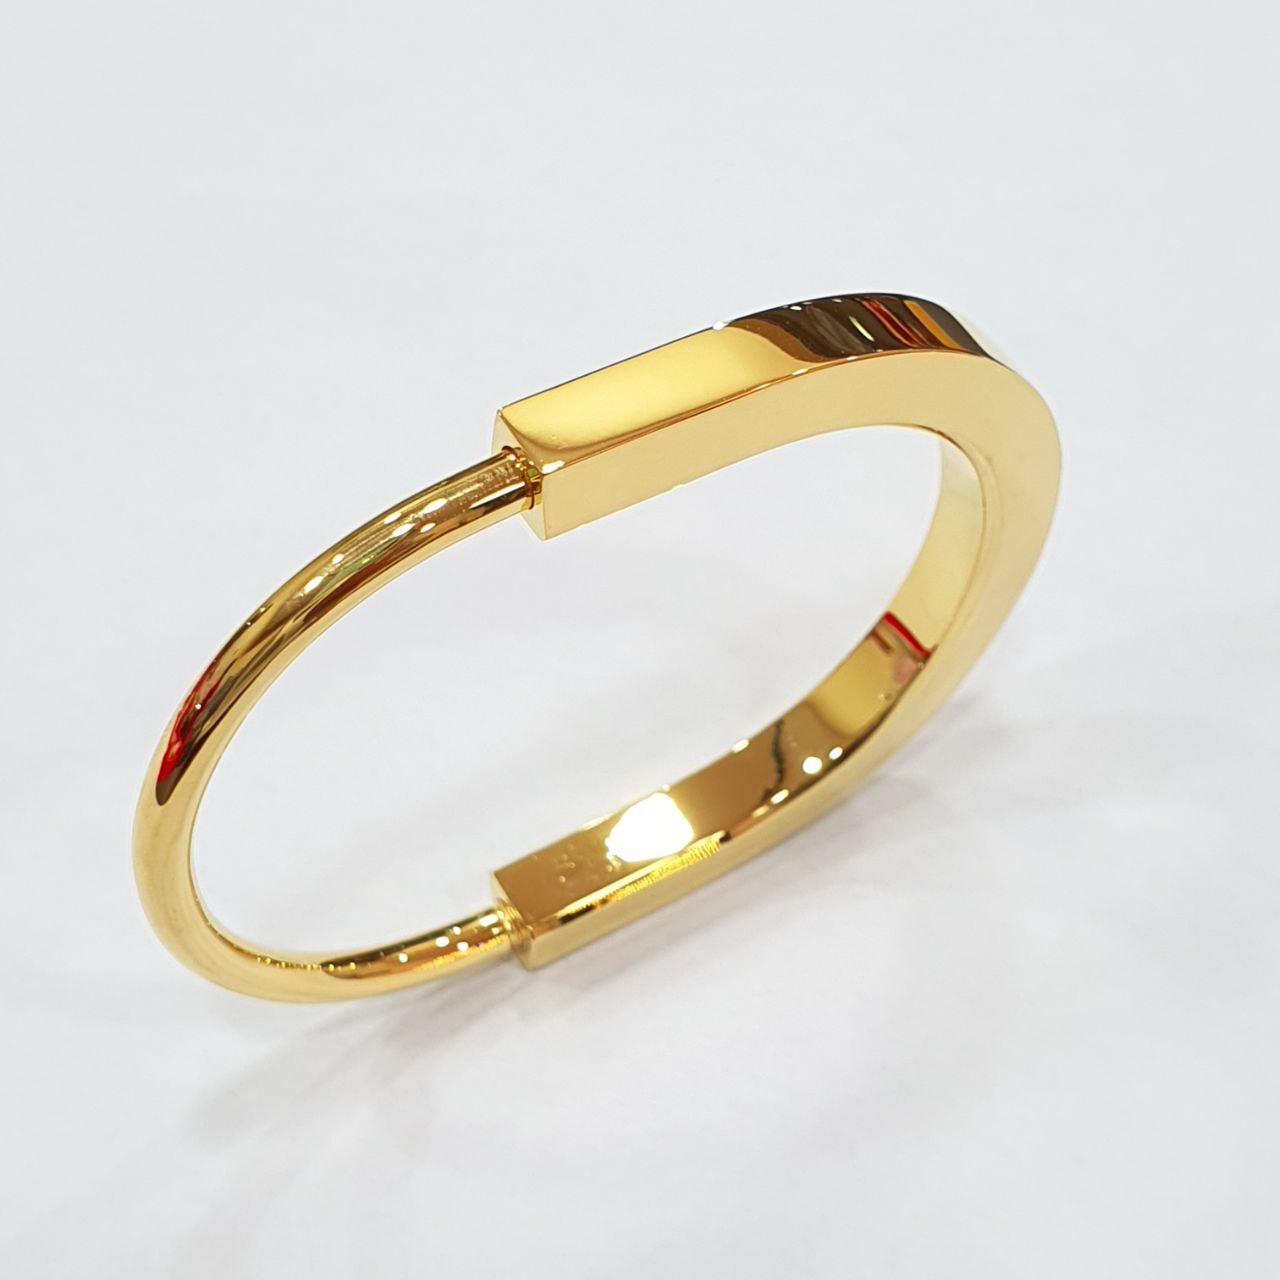 22k / 916 Gold Hollow T design U Lock Bangle-916 gold-Best Gold Shop